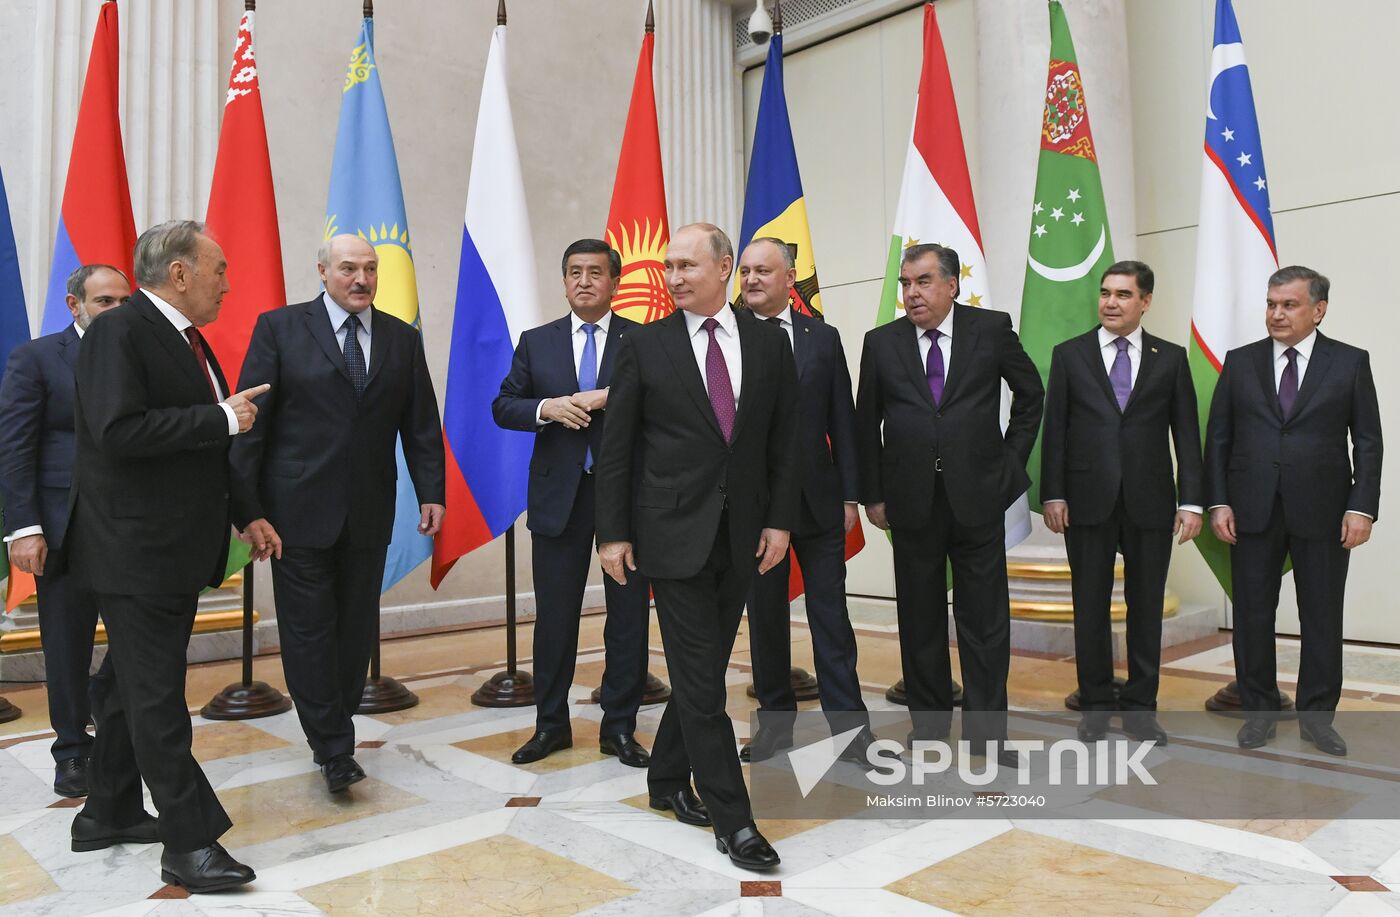 Russia Supreme Eurasian Economic Council